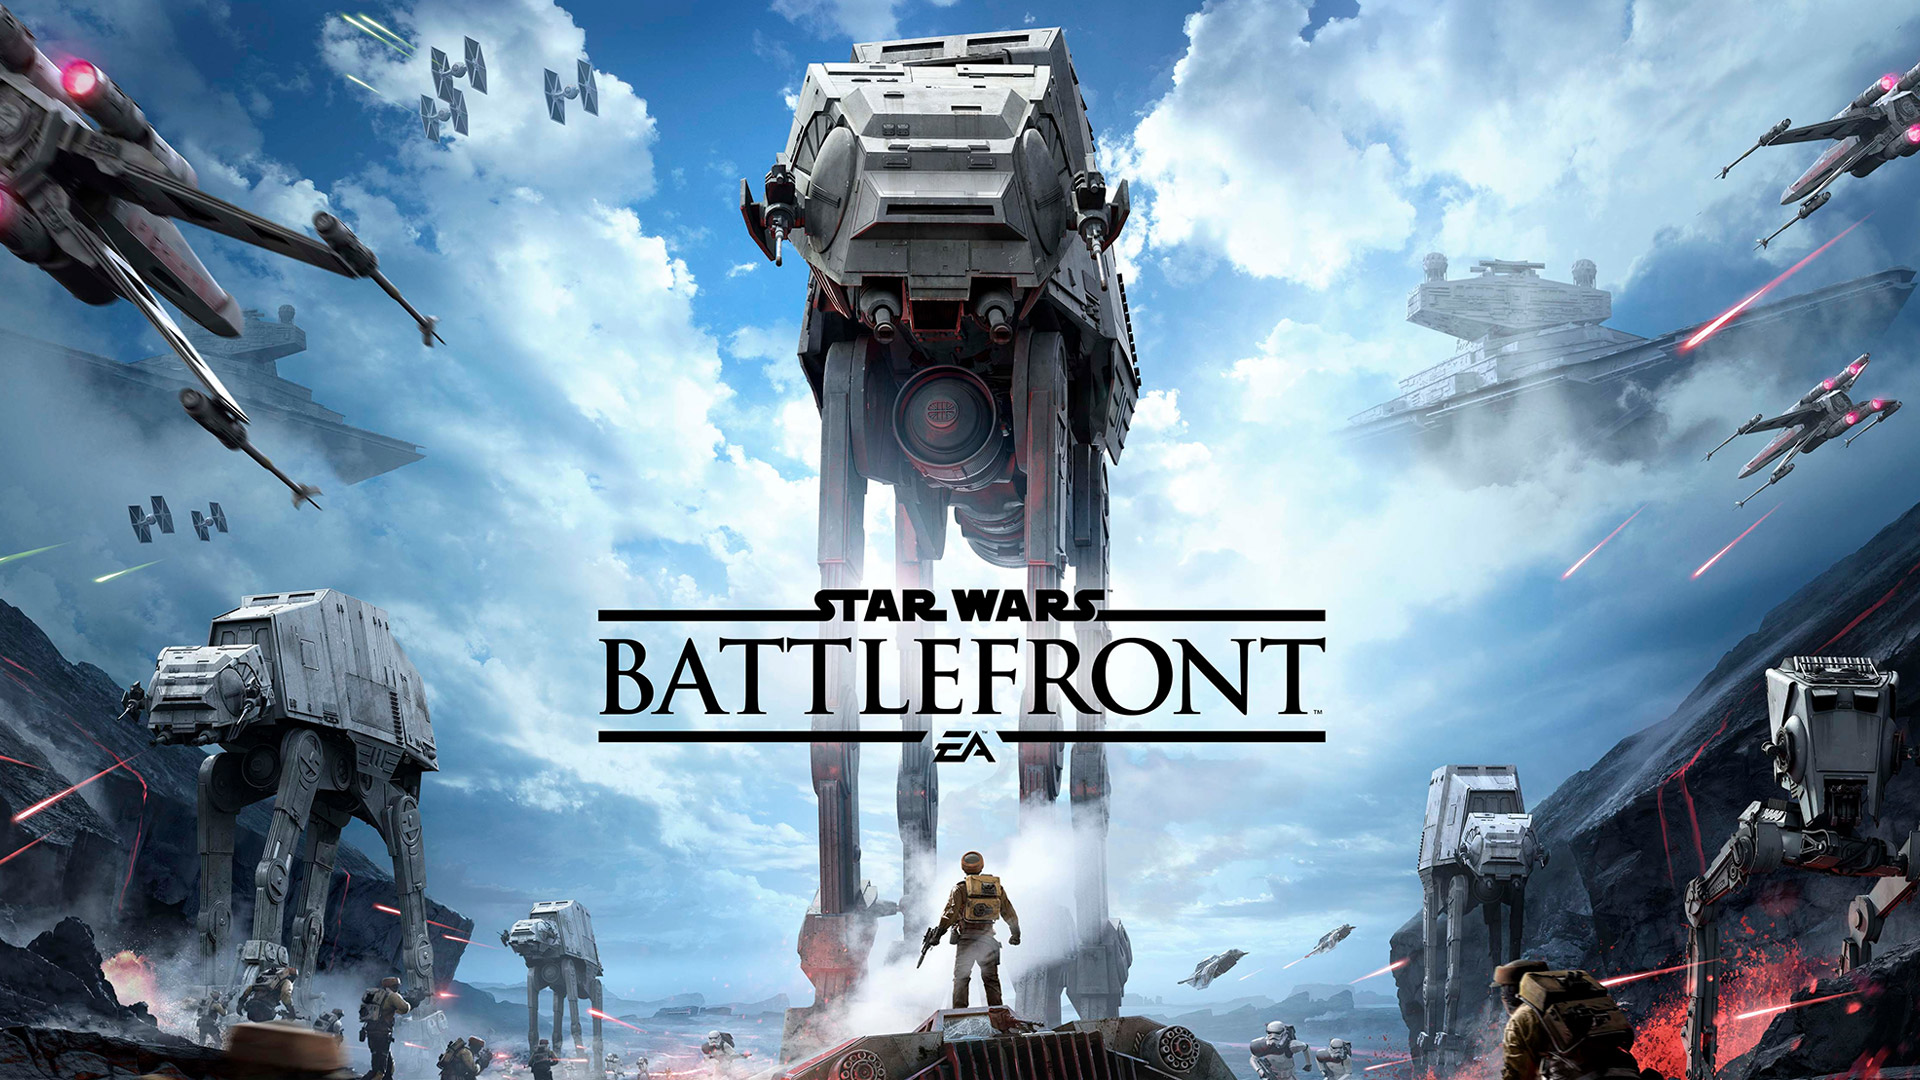  EA aurait annulé un spin-off de Star Wars: Battlefront prévu pour la next-gen